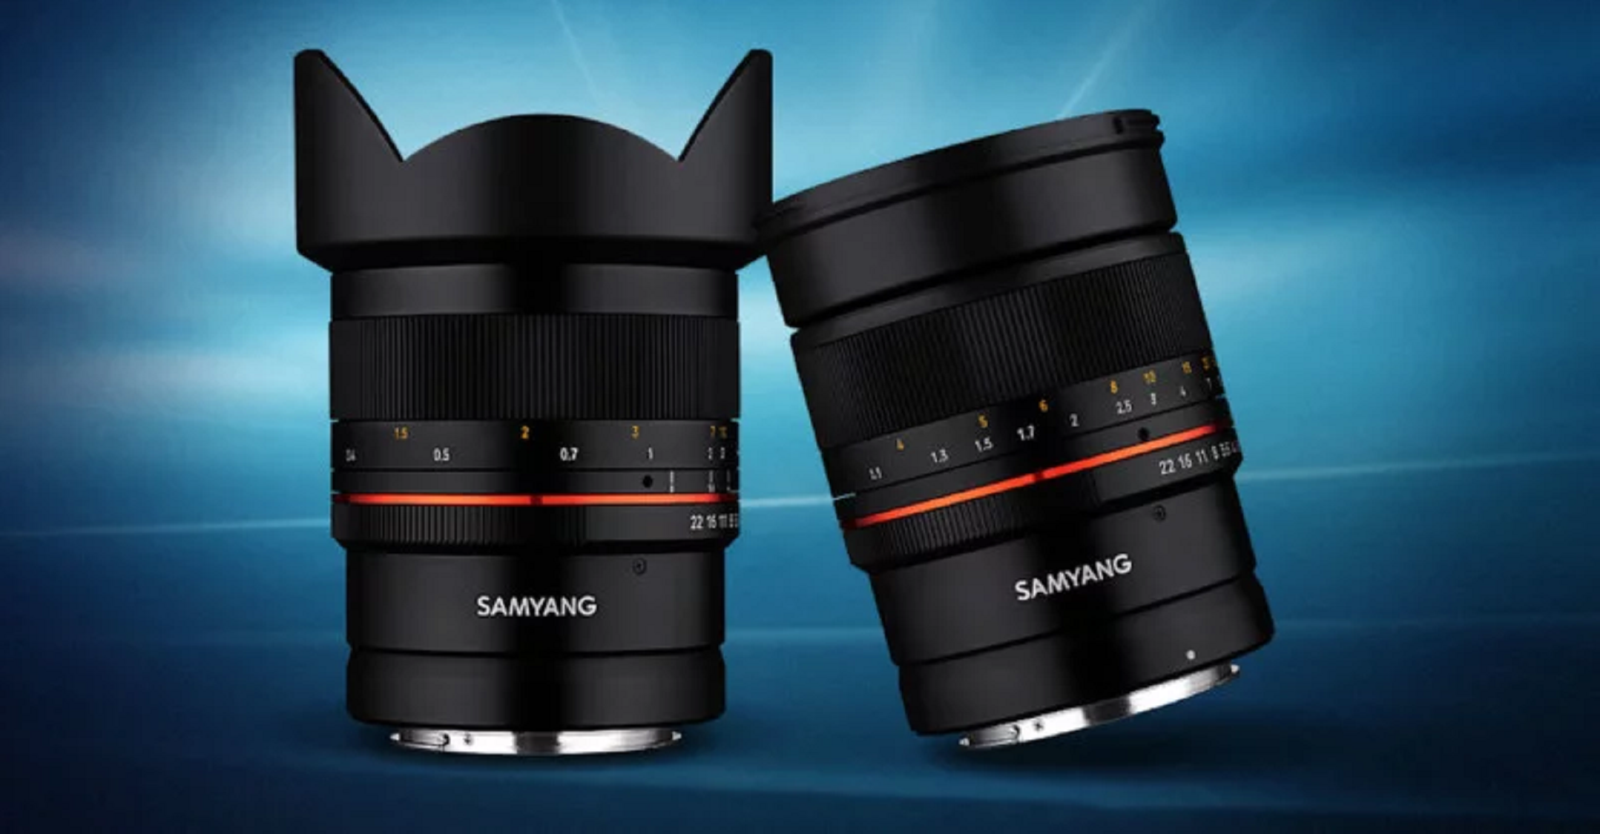 Samyang công bố bộ đôi ống kính MF 14mm f/2.8 RF và MF 85mm f/1.4 RF cho ngàm Canon RF